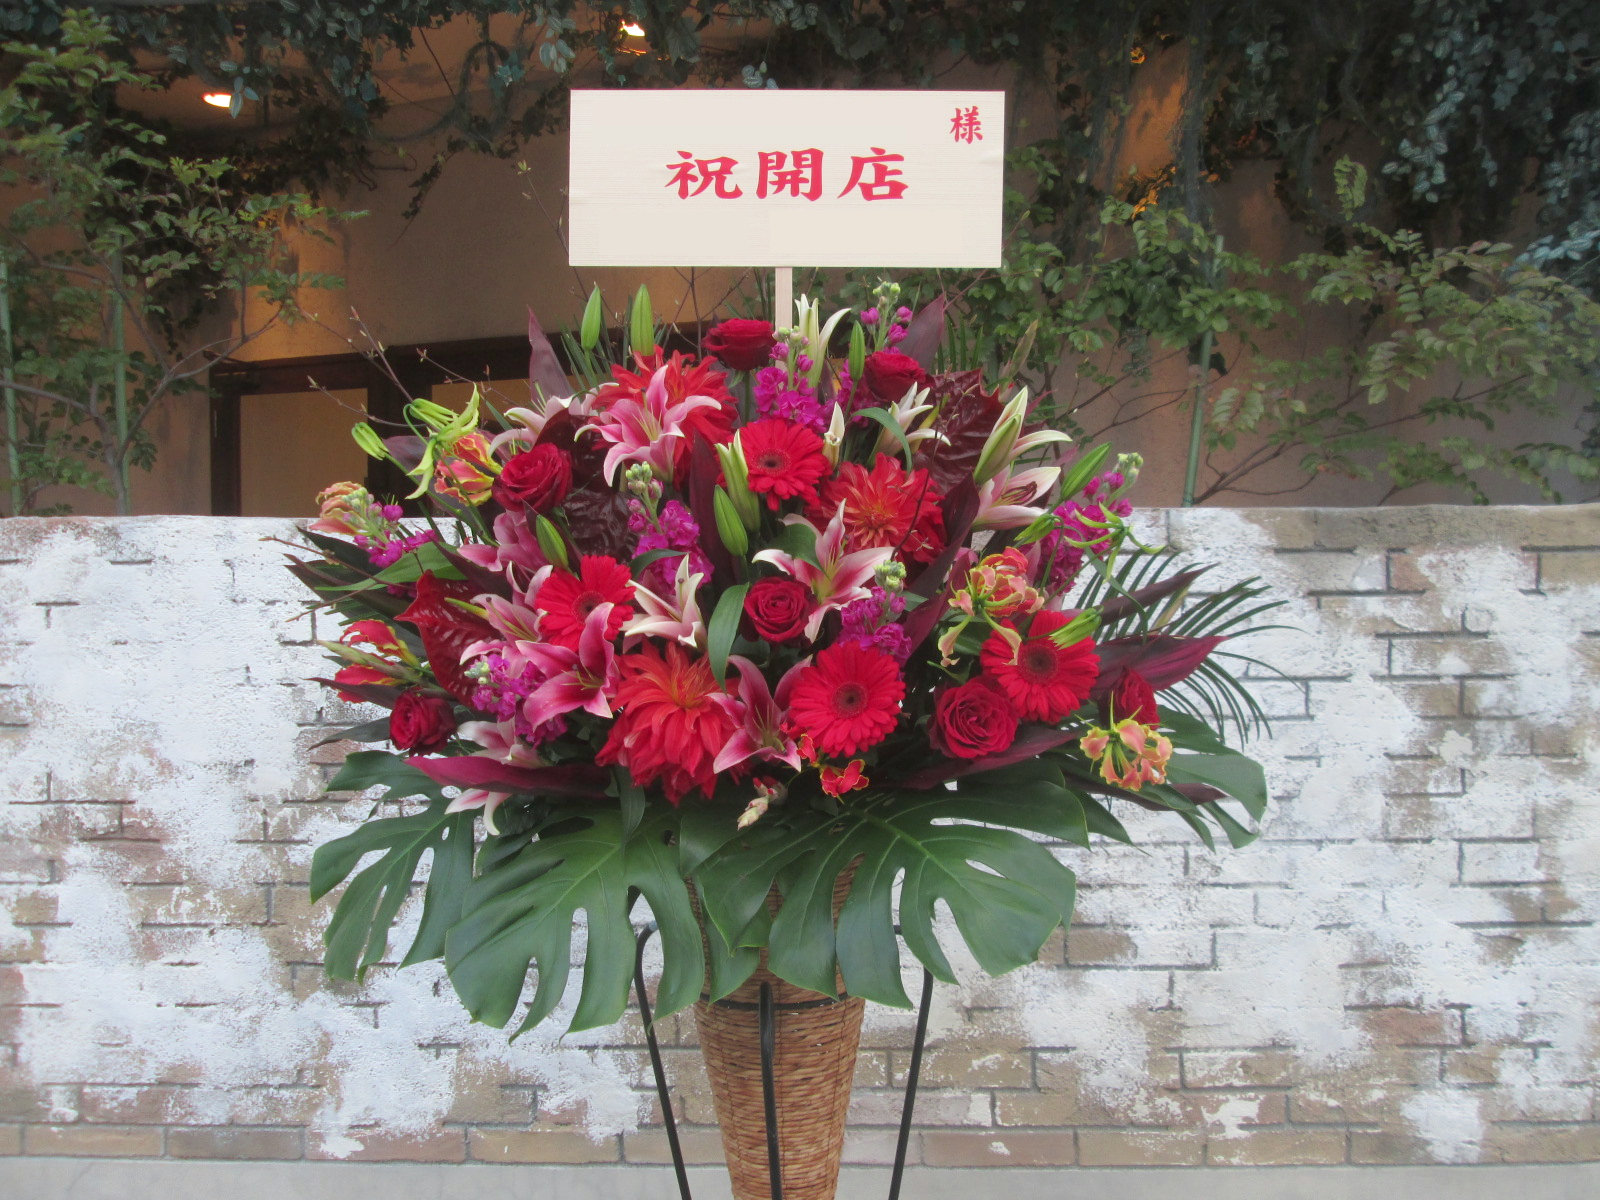 ヘアサロン 美容室開店へ贈るフラワーギフト５選と贈る際のマナー 祝花の花助 贈答用の花の選び方やマナーをご紹介